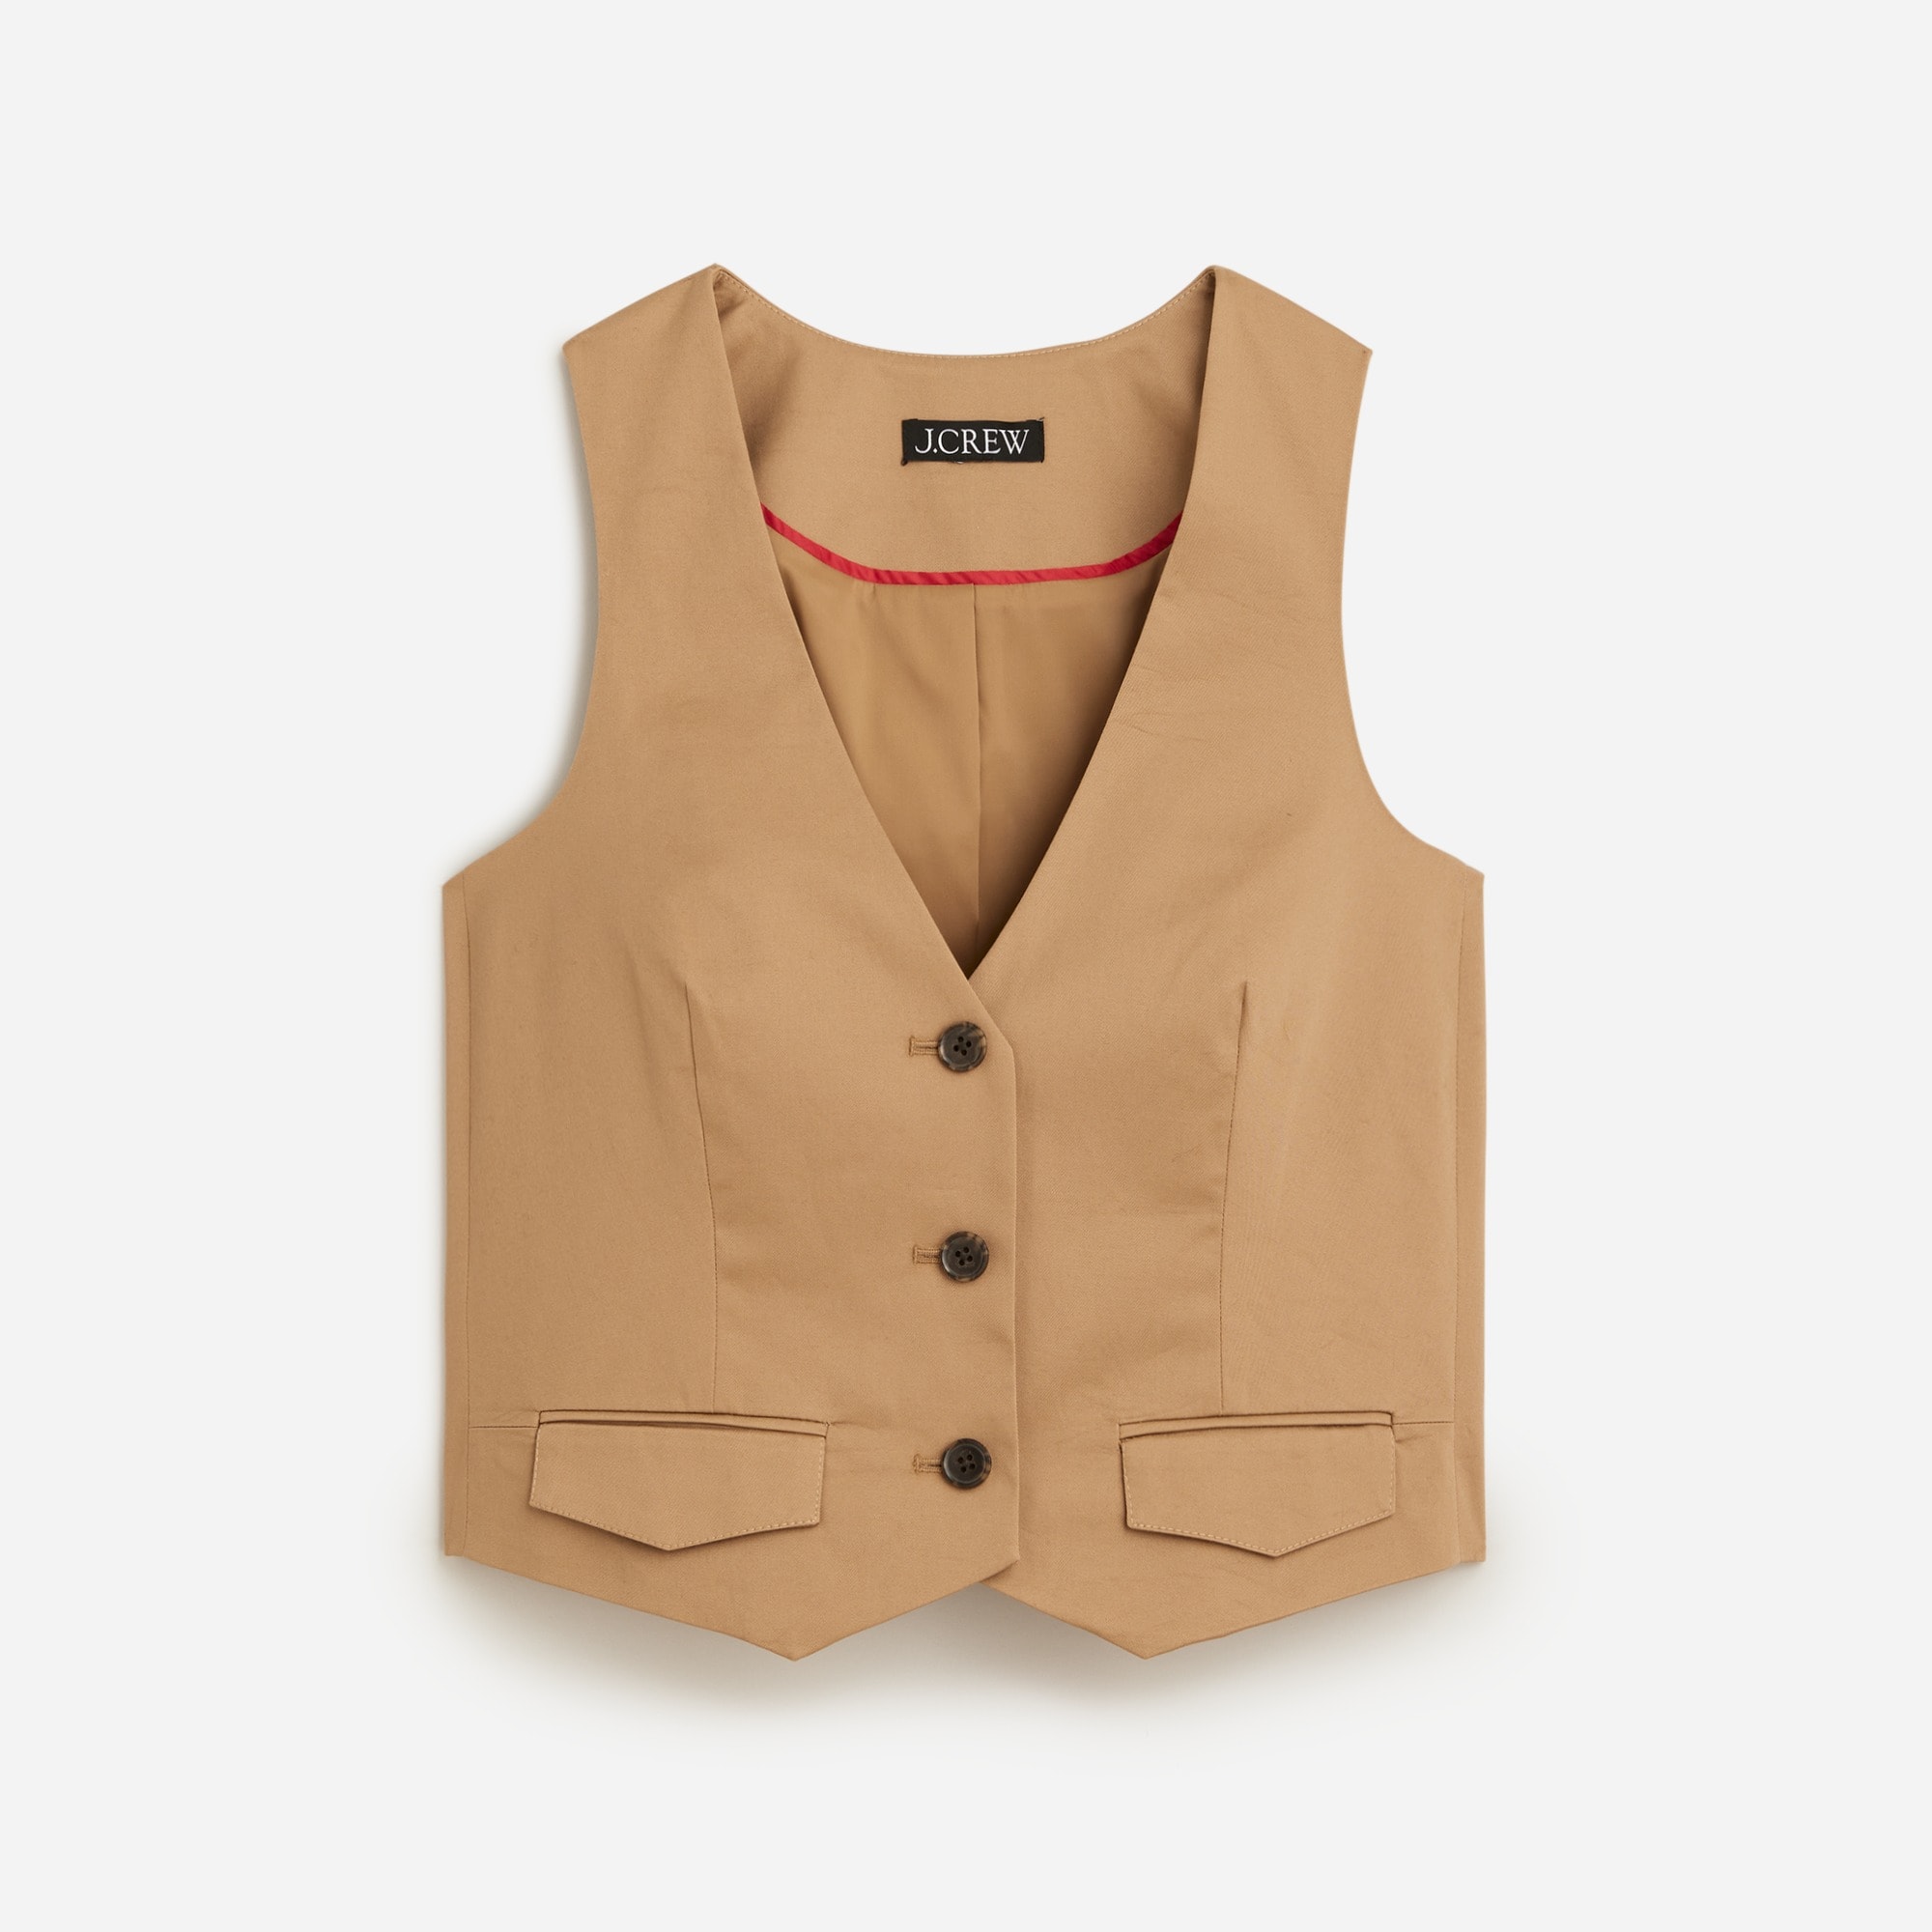  Slim-fit vest in lightweight chino